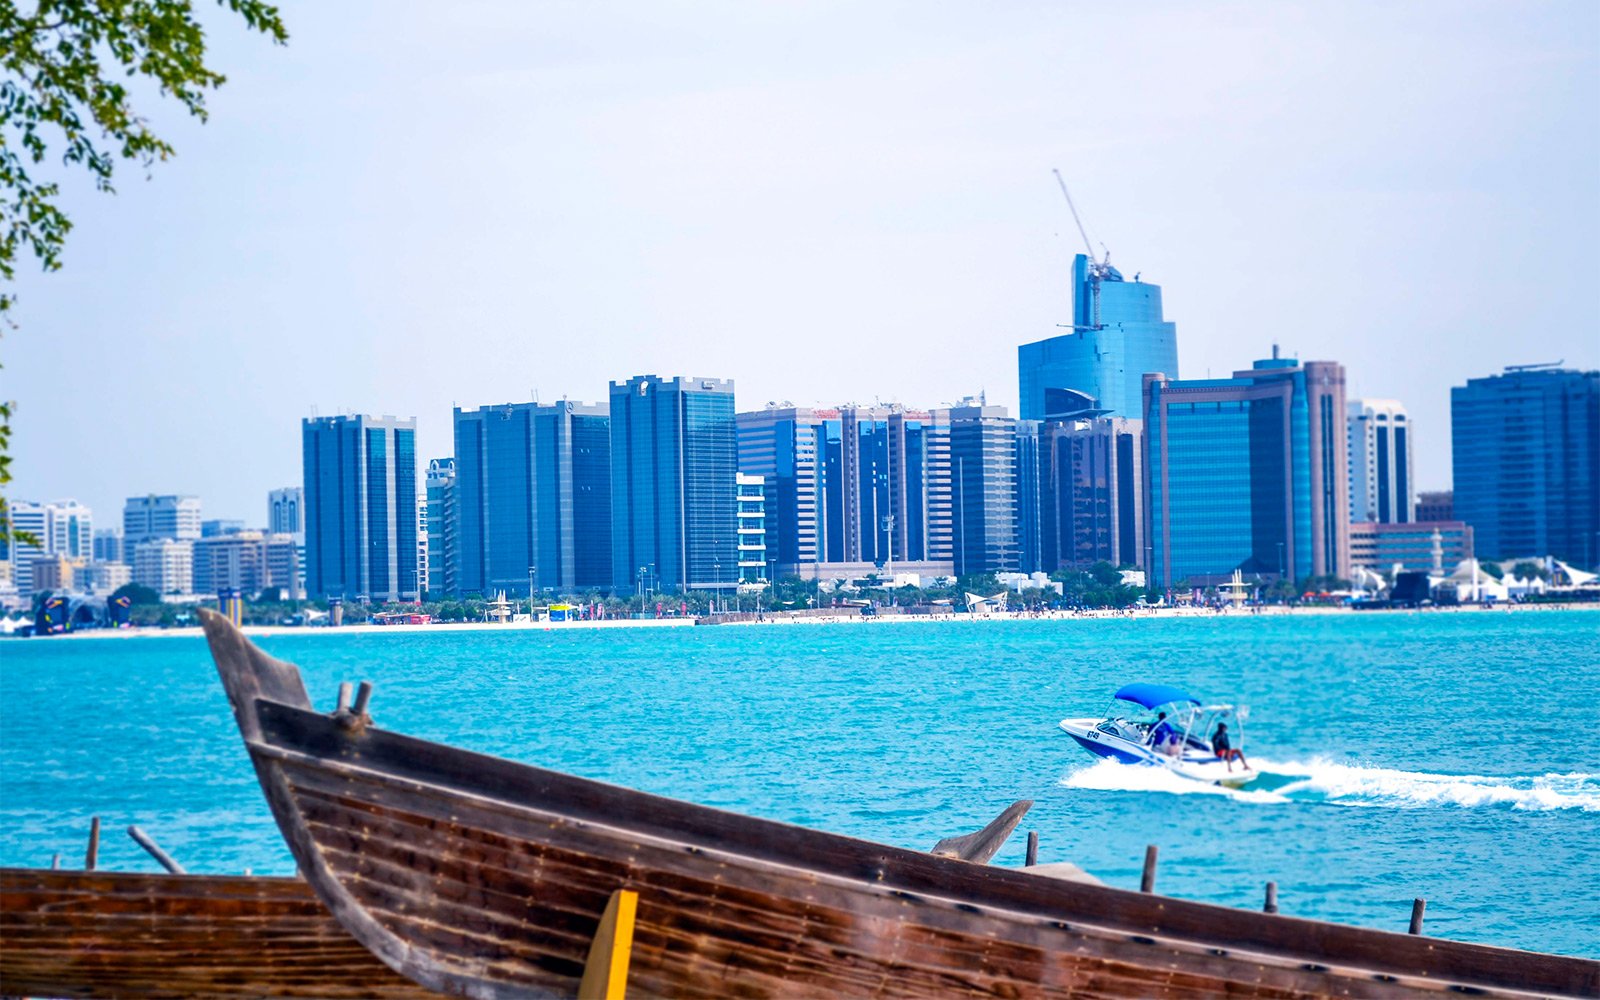 The Persian Gulf, Abu Dhabi